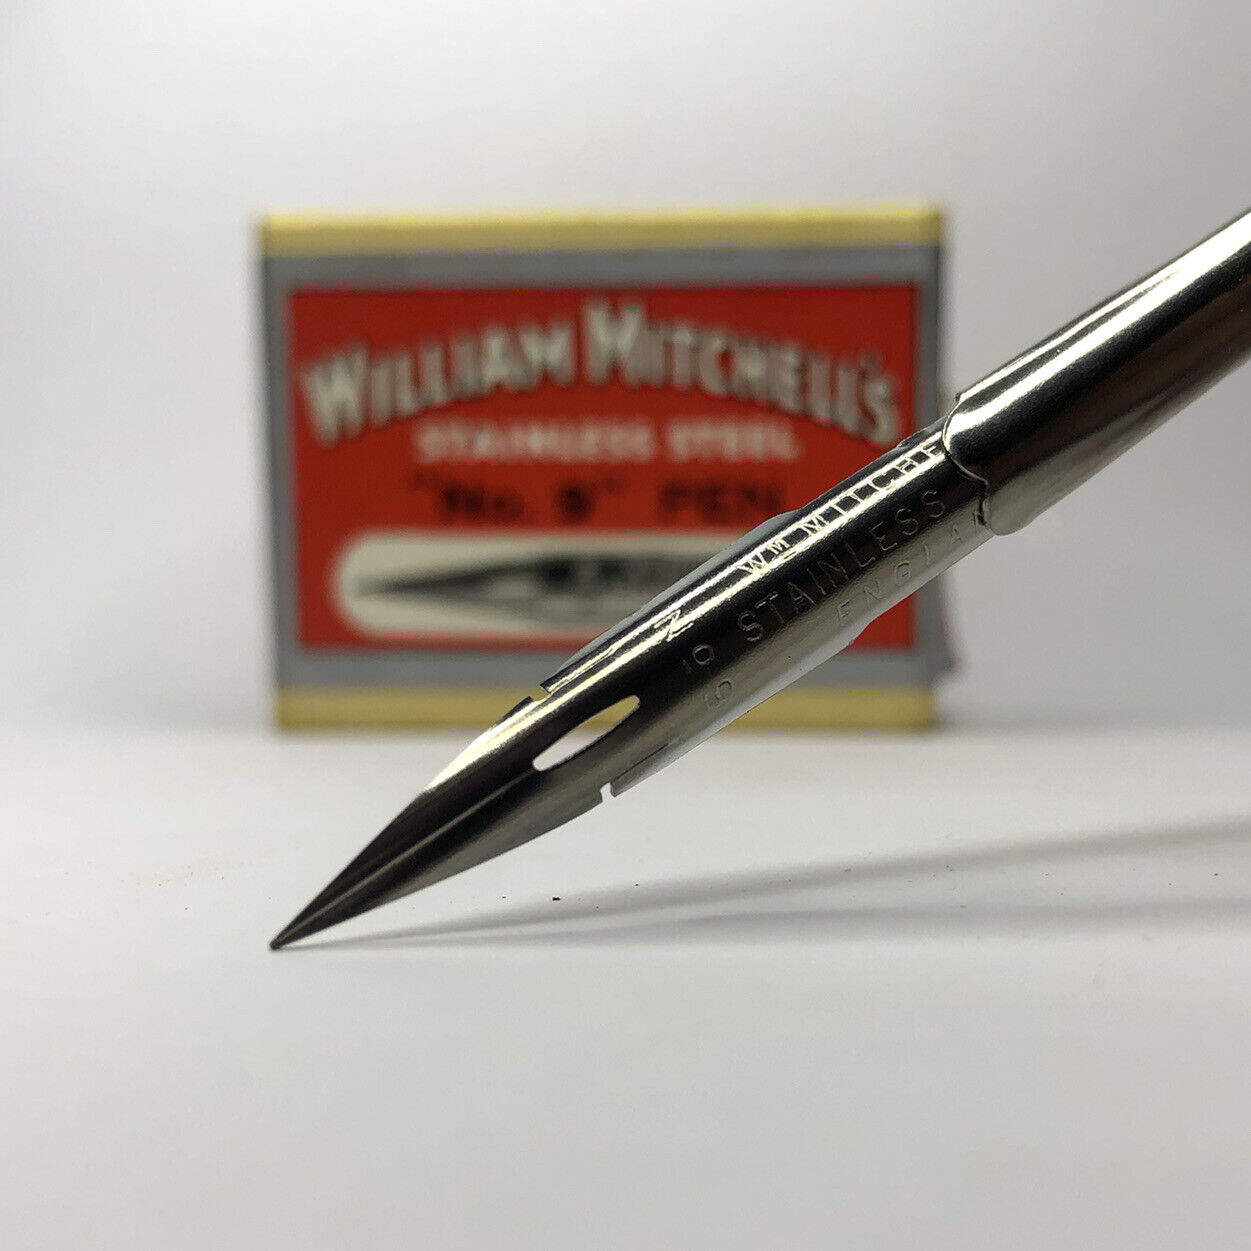 x2 William Mitchell's Stainless Steel "No.9" Pen 0221 Fine Nib Vintage Dip Pen William Mitchell - фотография #7